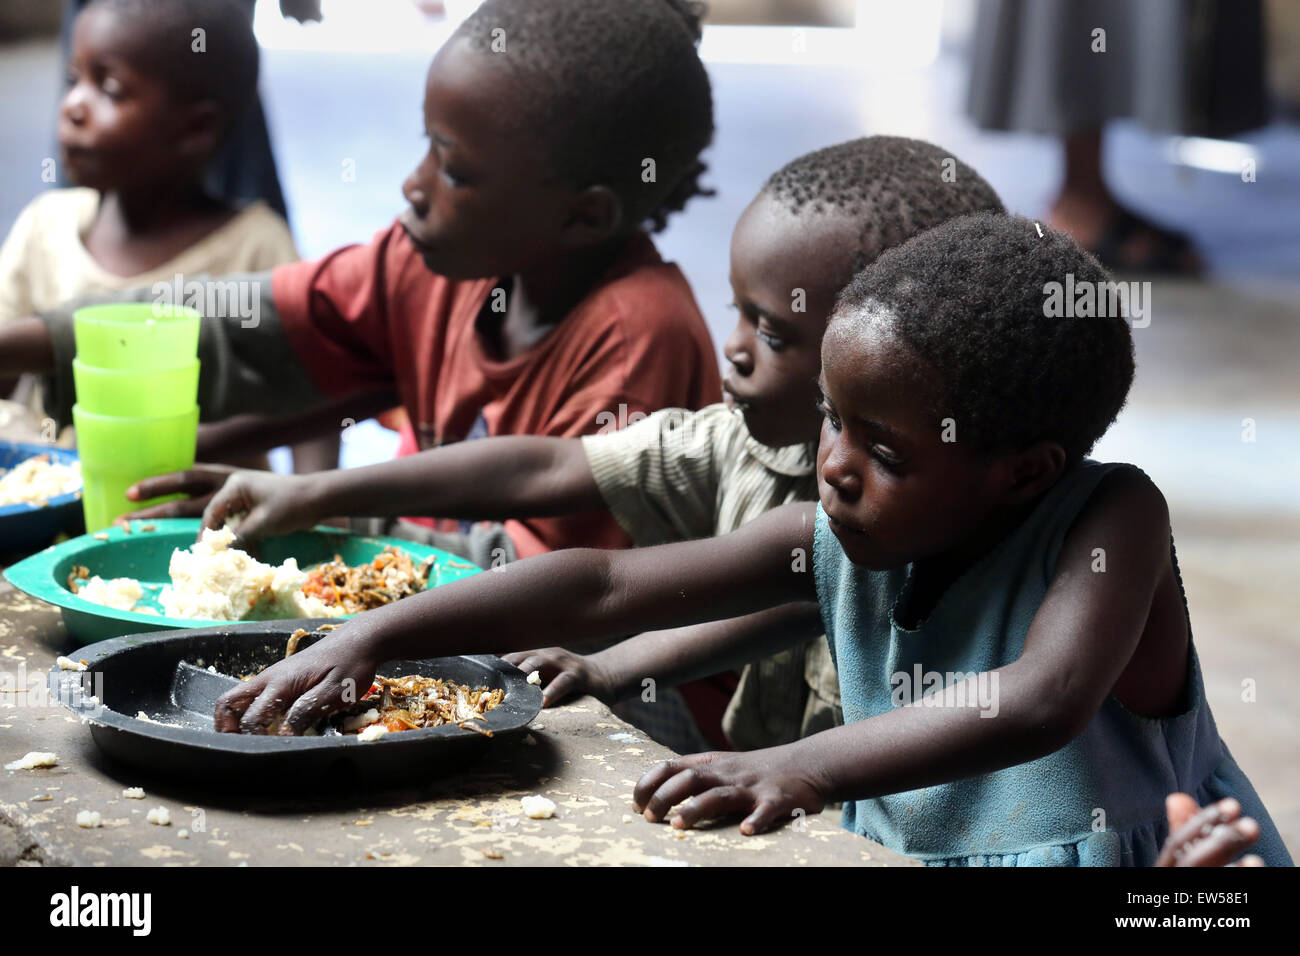 Fütterung für Waisenkinder in einem Center laufen von der katholischen Kirche, Gemeinde Chifubu in Ndola, Sambia, Afrika Stockfoto